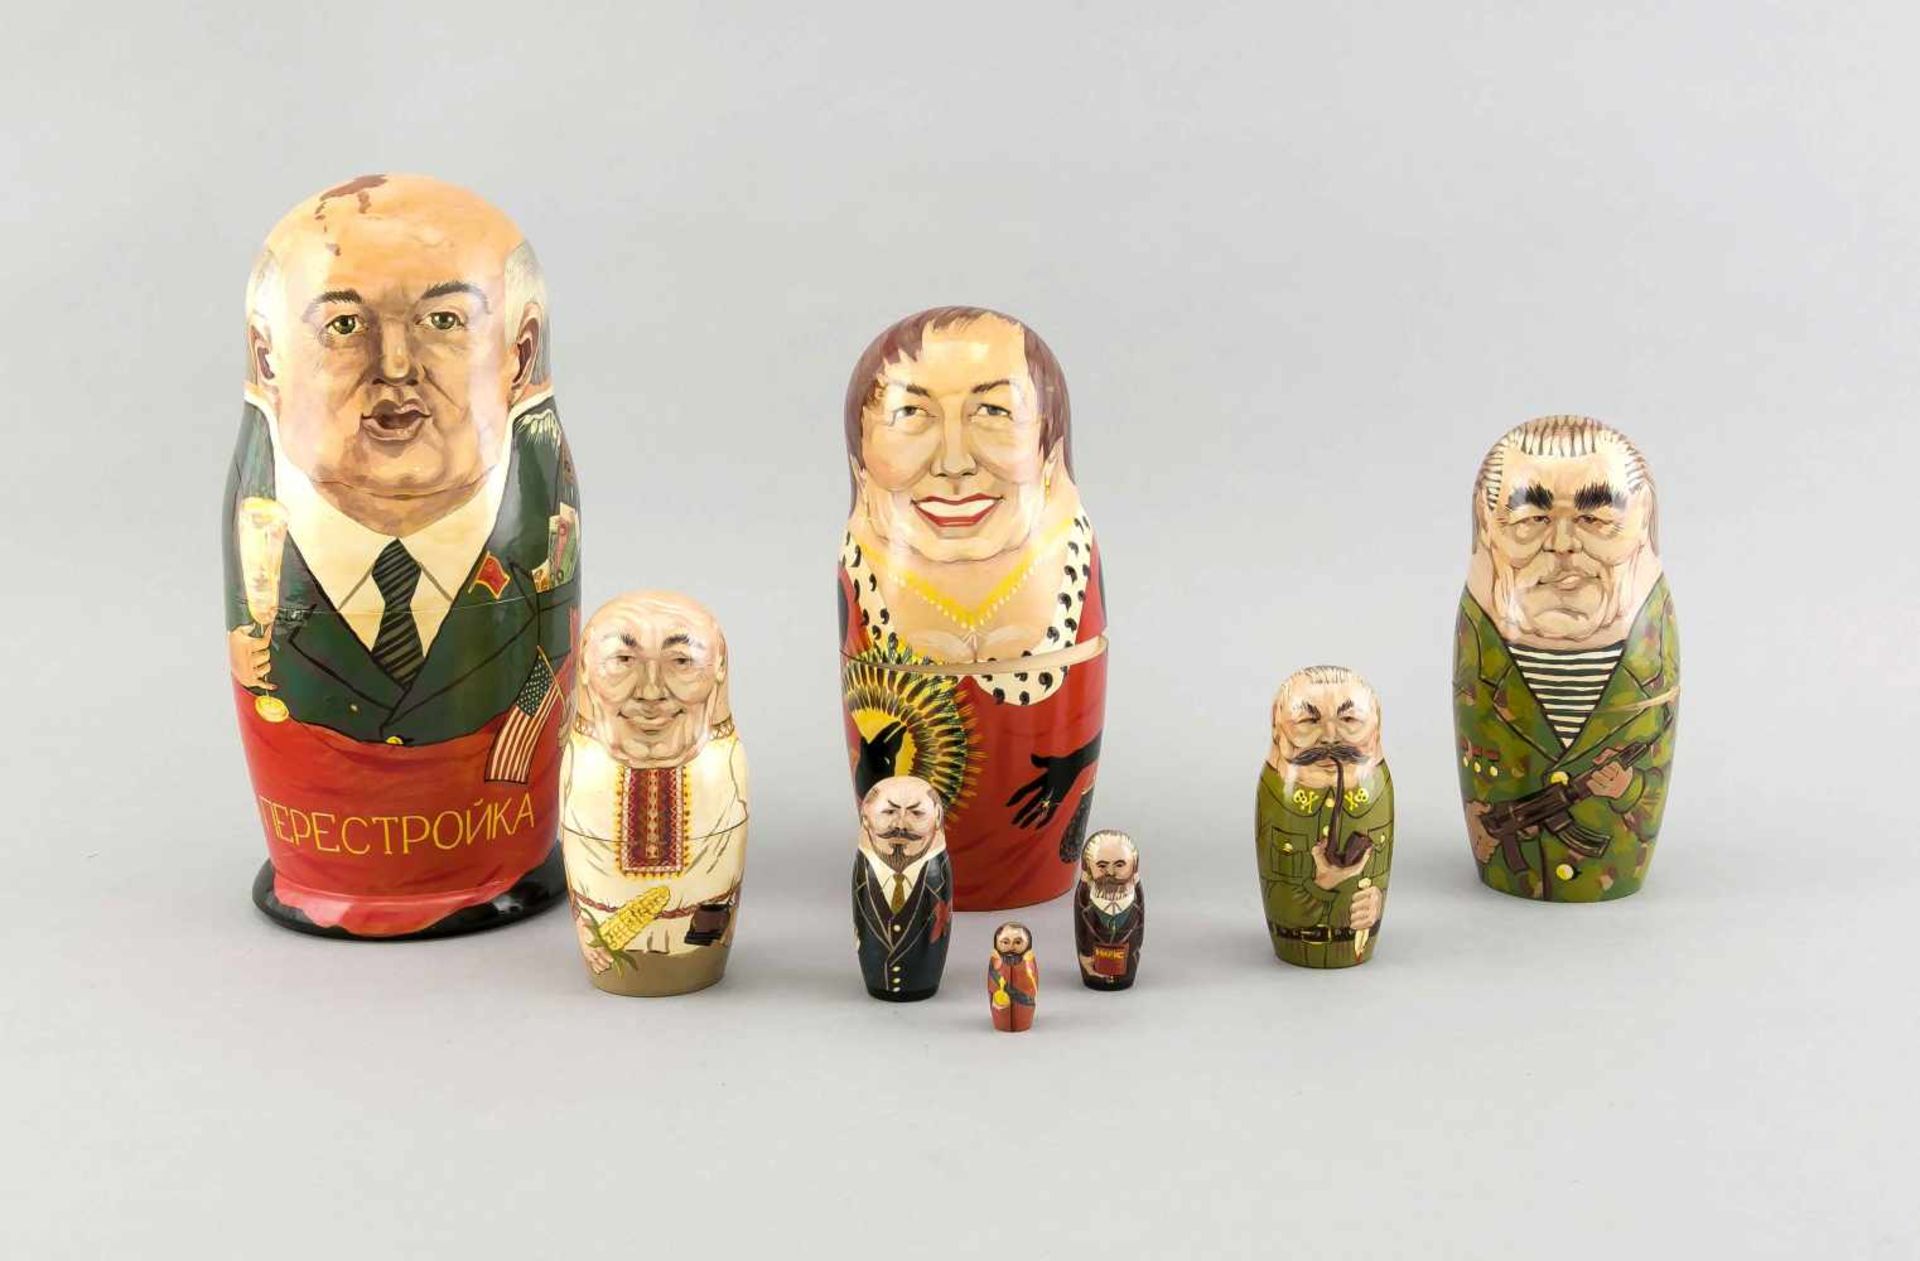 Matroschka mit 8 russischen Politiker-Karikaturen, 1990er Jahre, Holz, farbig gefasst, part. etwas